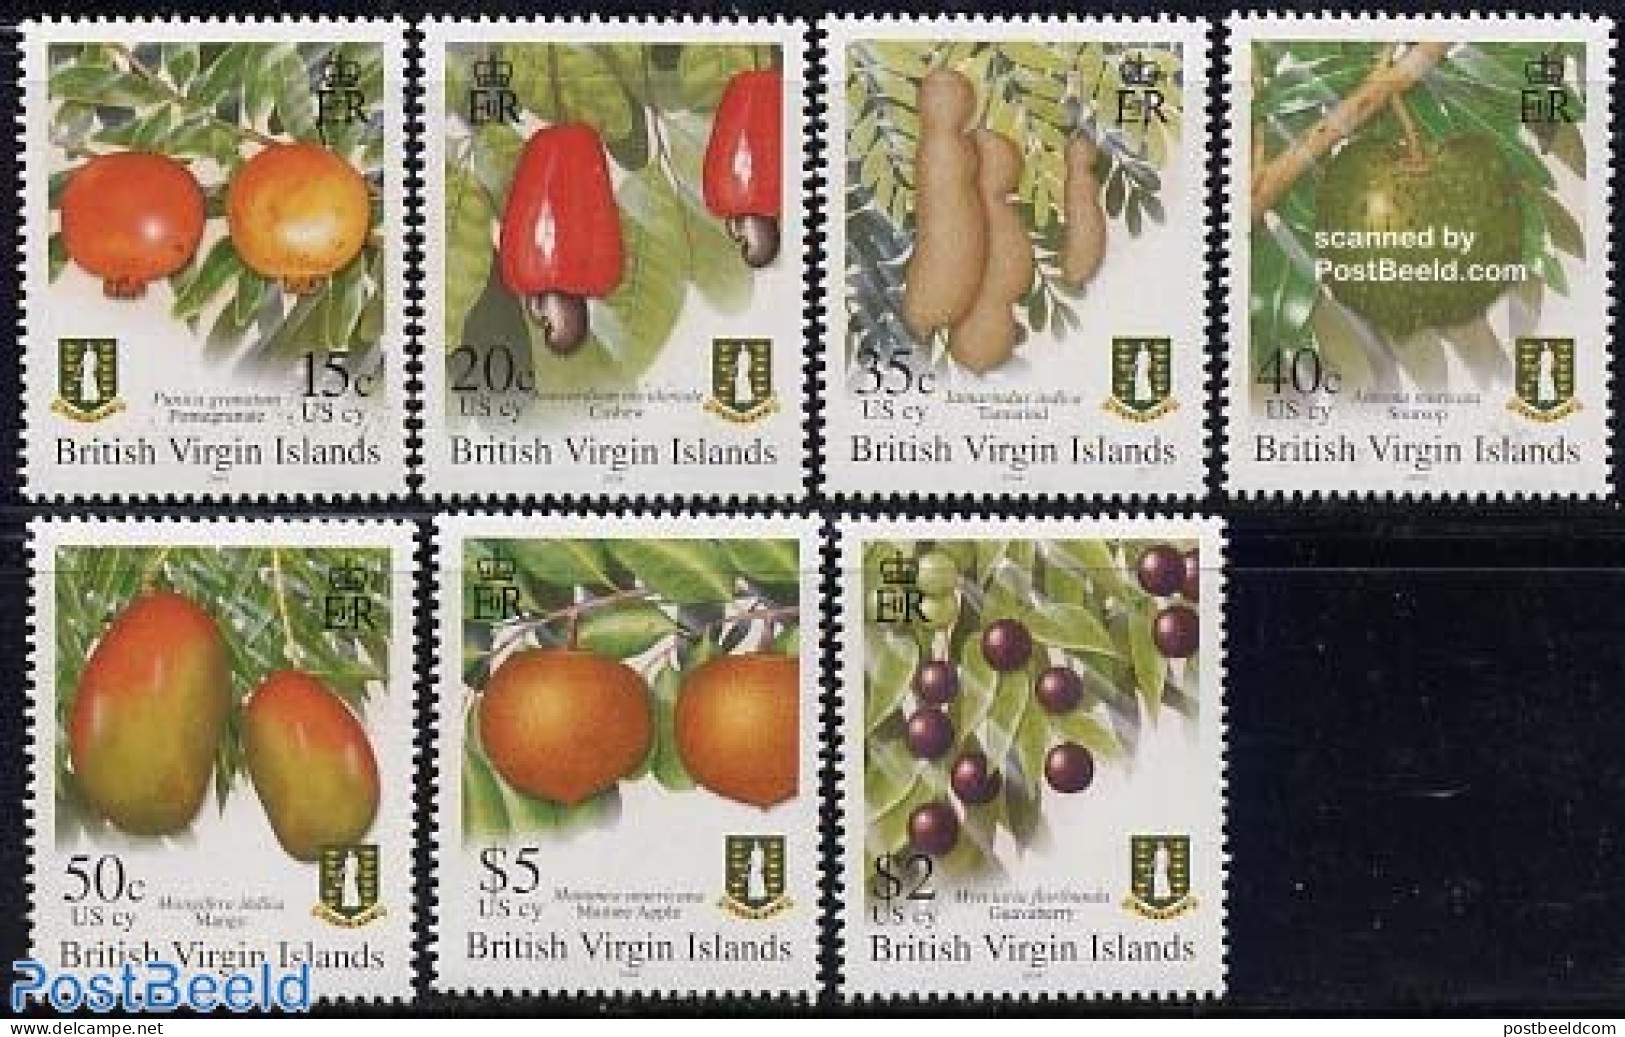 Virgin Islands 2004 Definitives, Fruits 7v, Mint NH, Nature - Fruit - Frutas